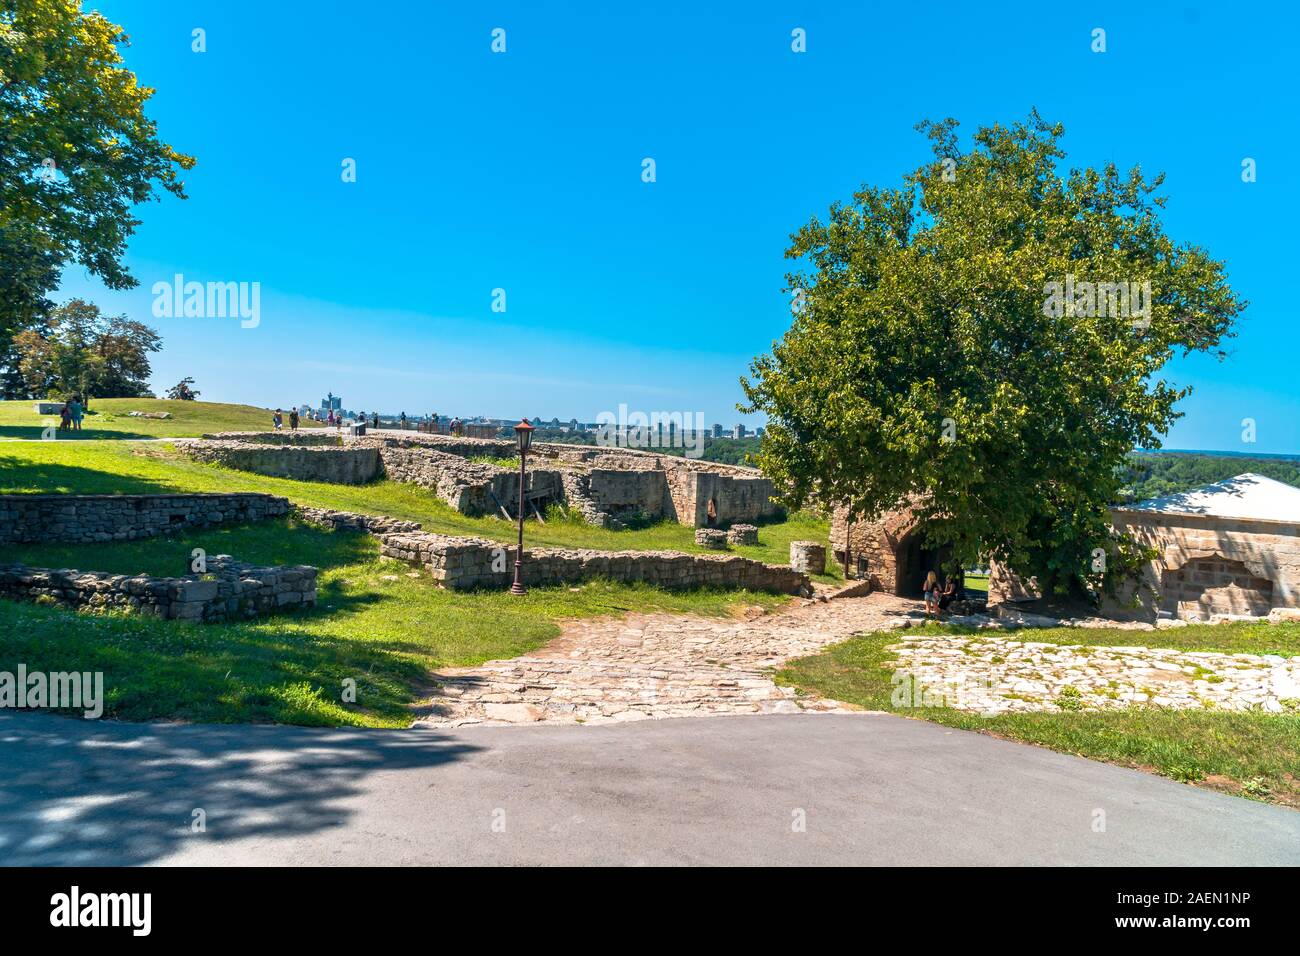 Belgrado, Serbia - 10 agosto 2019 : Kalemegdan, luogo storico di Belgrado. Si tratta di uno dei più famosi luoghi turistici. Foto Stock